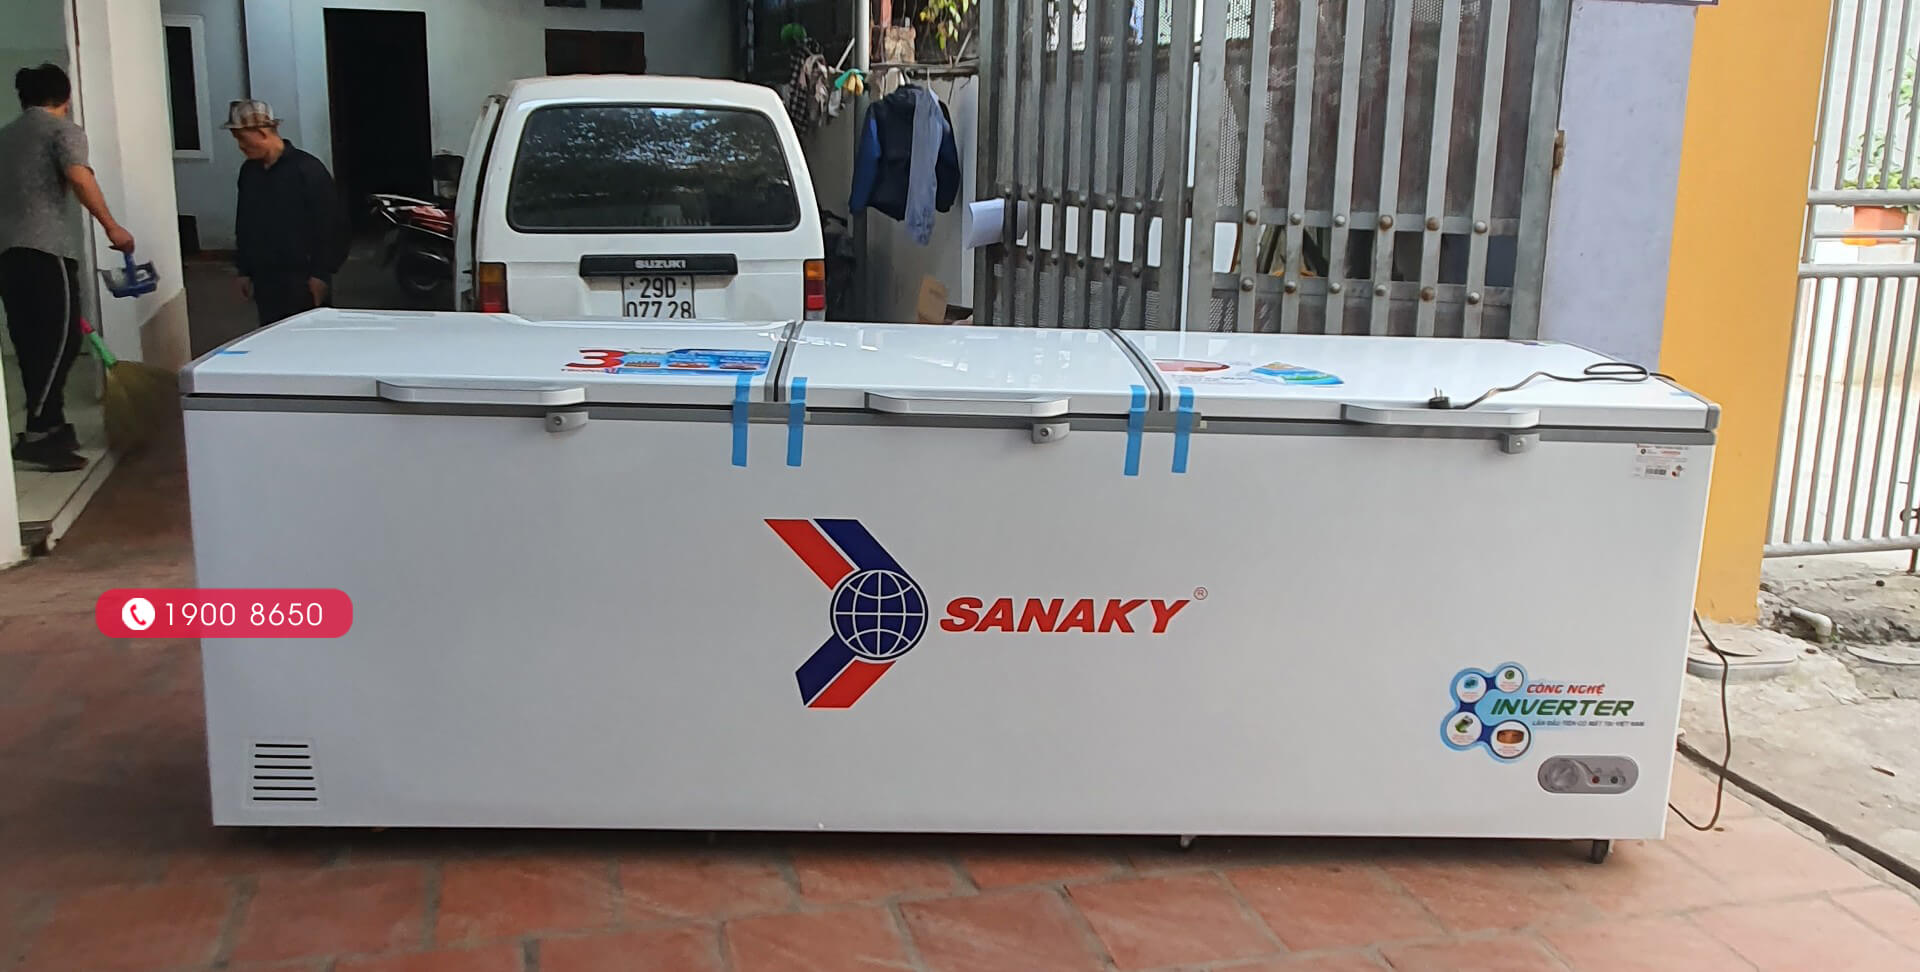 Tủ đông Inverter Sanaky VH-1199HY3